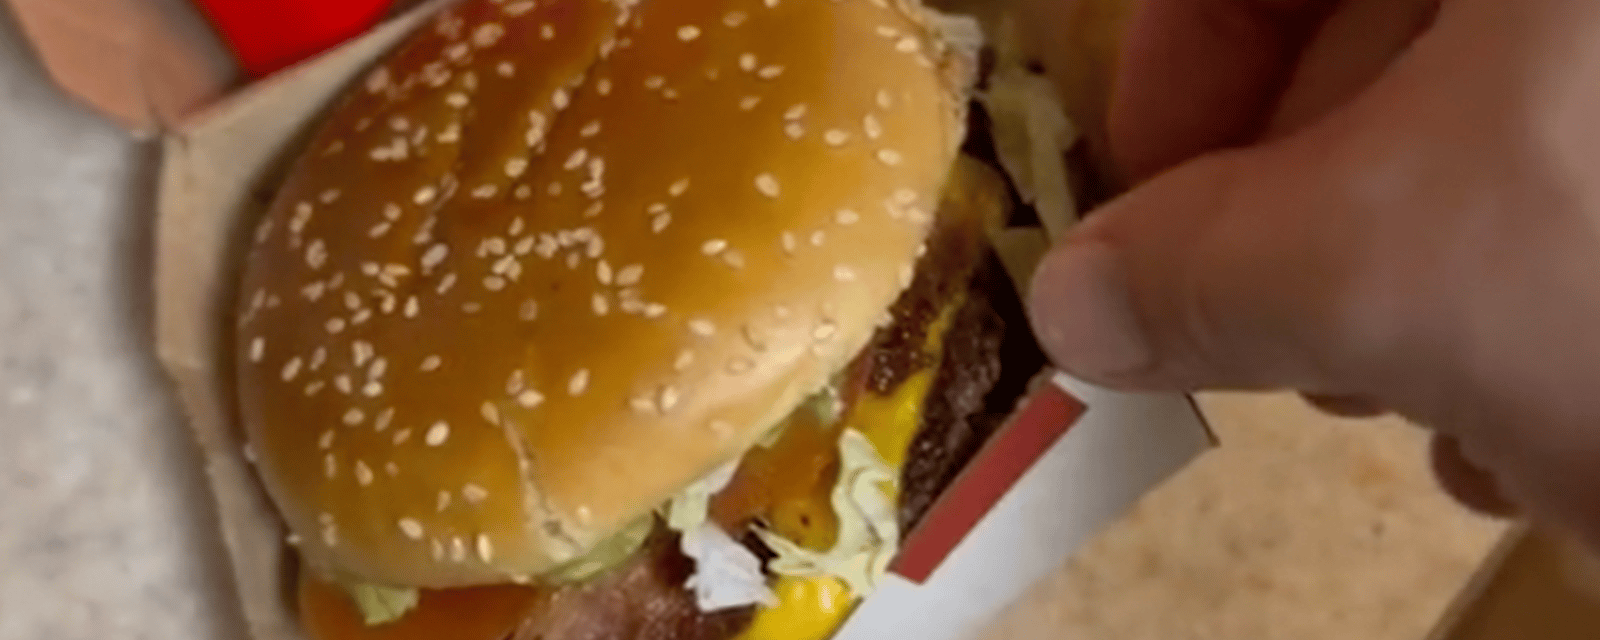 Un internaute furieux contre les prix rendus bien trop élevés de McDonald's